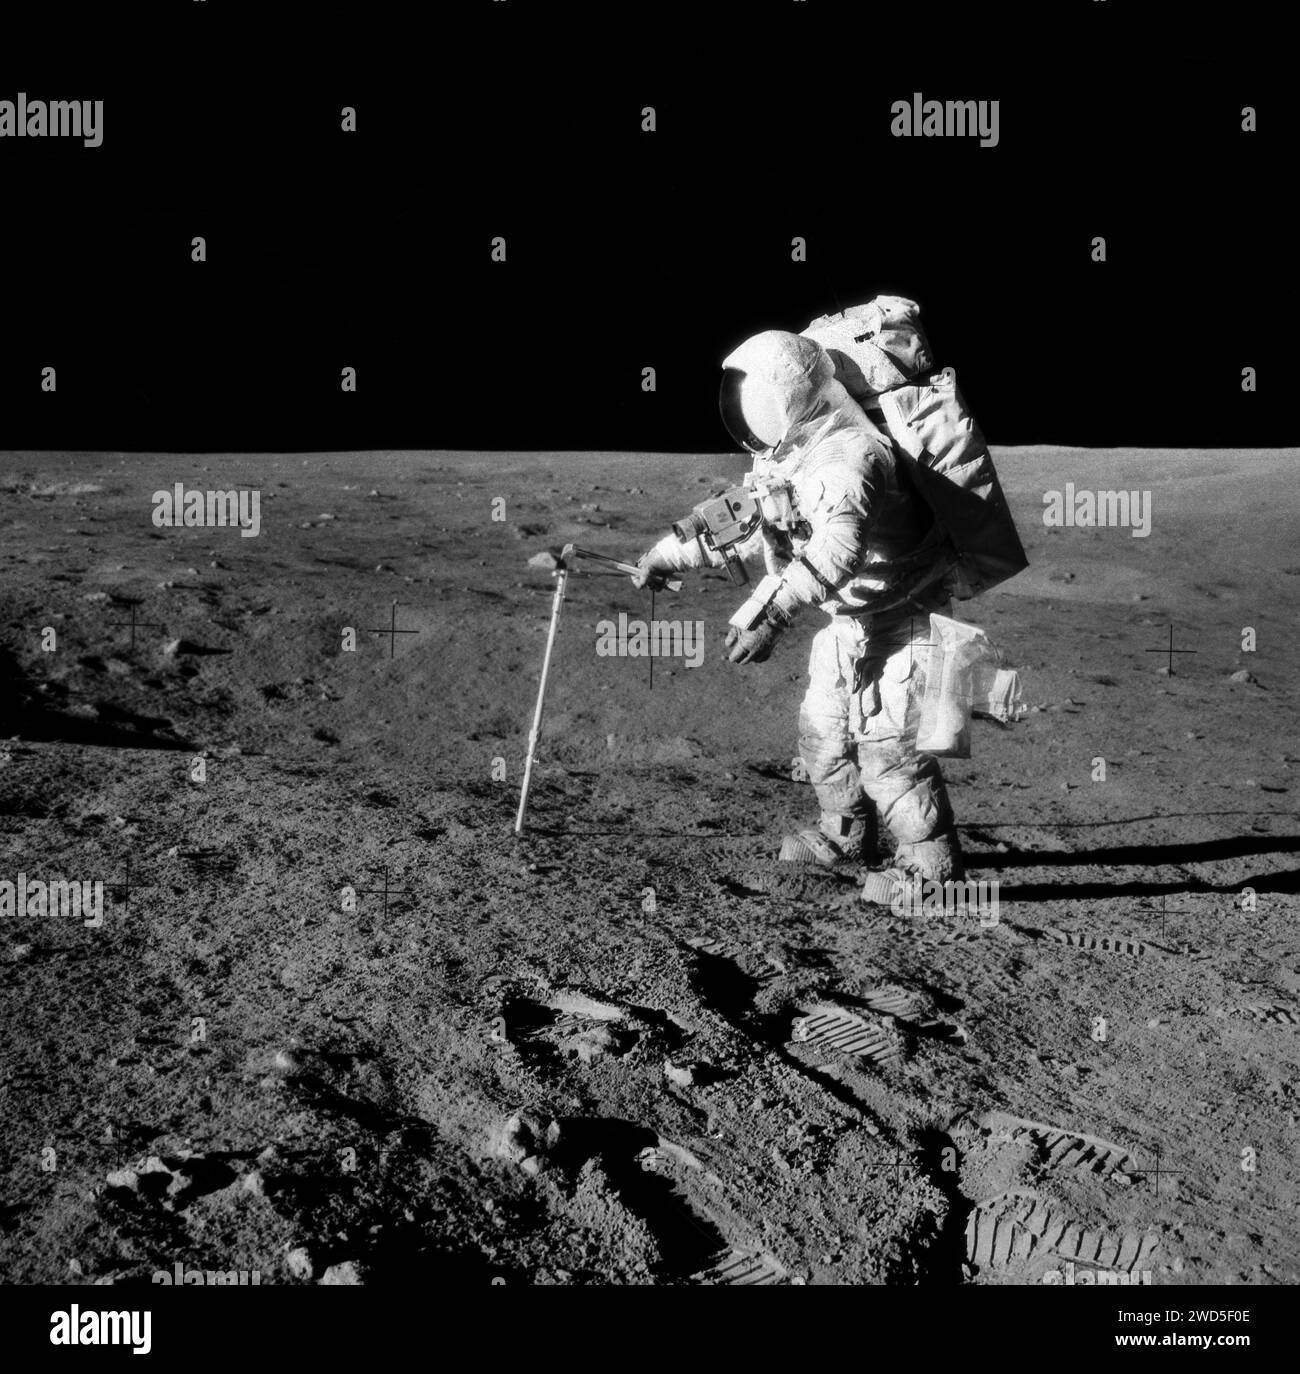 L'astronaute américain Alan L. Bean, pilote du module lunaire, faisant pénétrer le tube carottier dans la surface lunaire pendant l'activité extravéhiculaire d'Apollo 12, Johnson Space Center, NASA, 20 novembre 1969 Banque D'Images